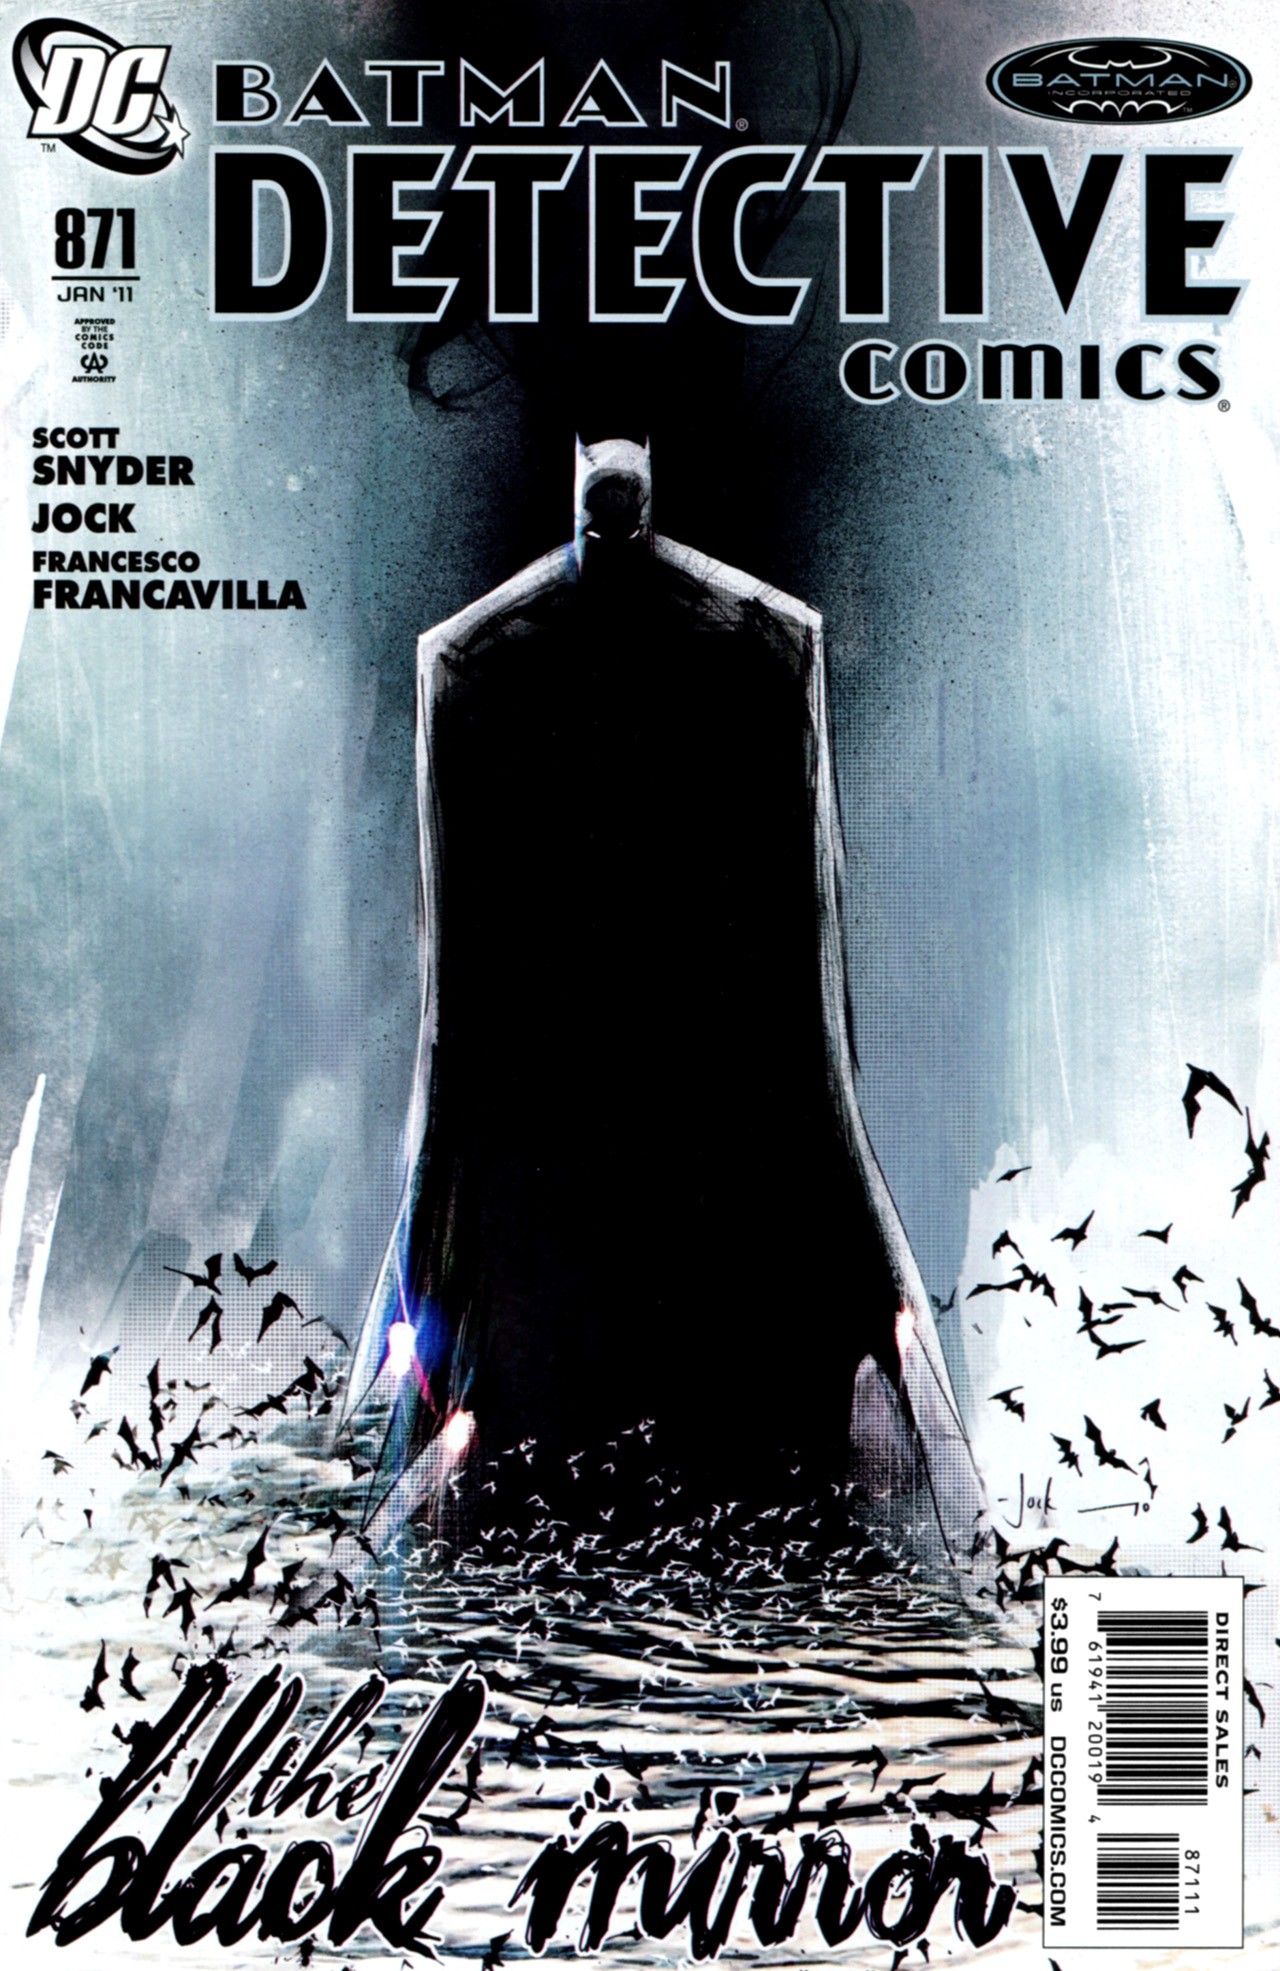 Detective Comics Vol. 1 #871